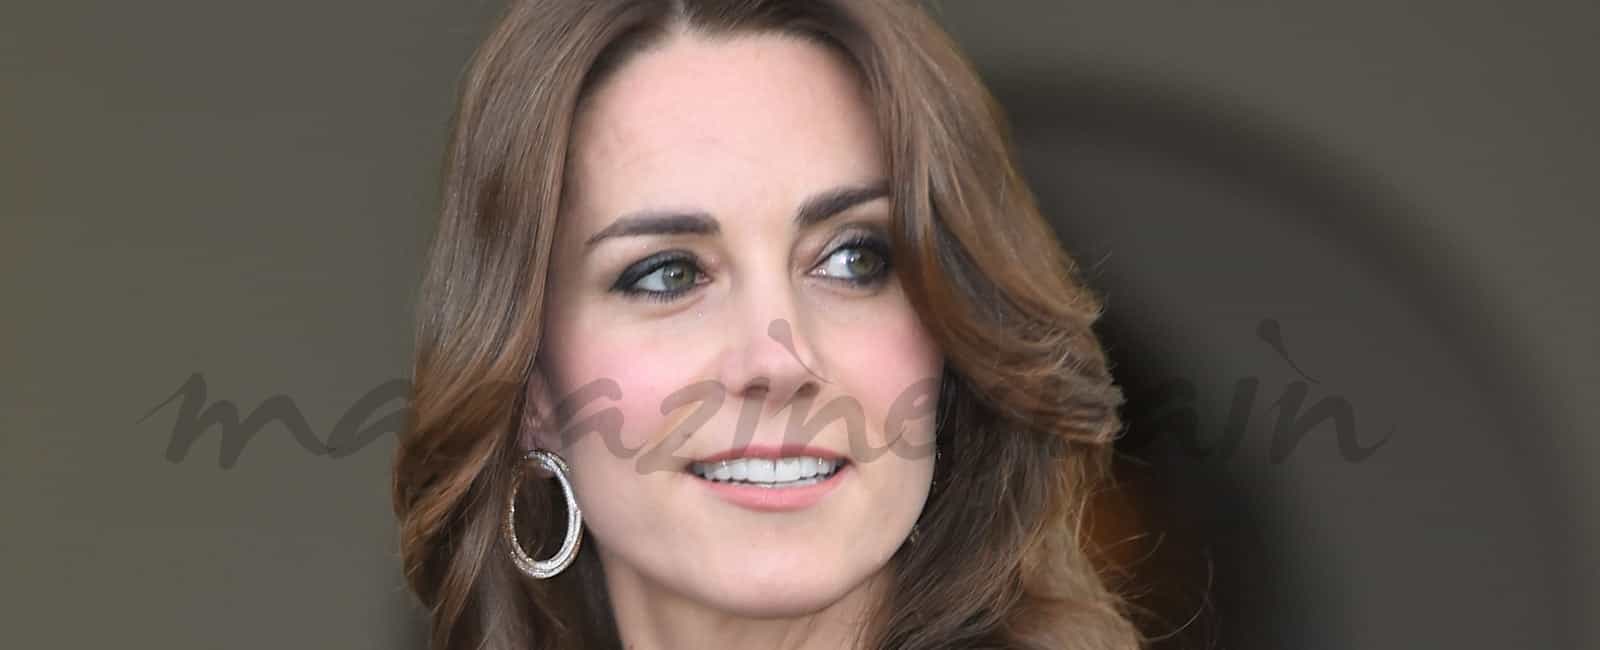 Kate Middleton, cena de gala en los jardines de palacio